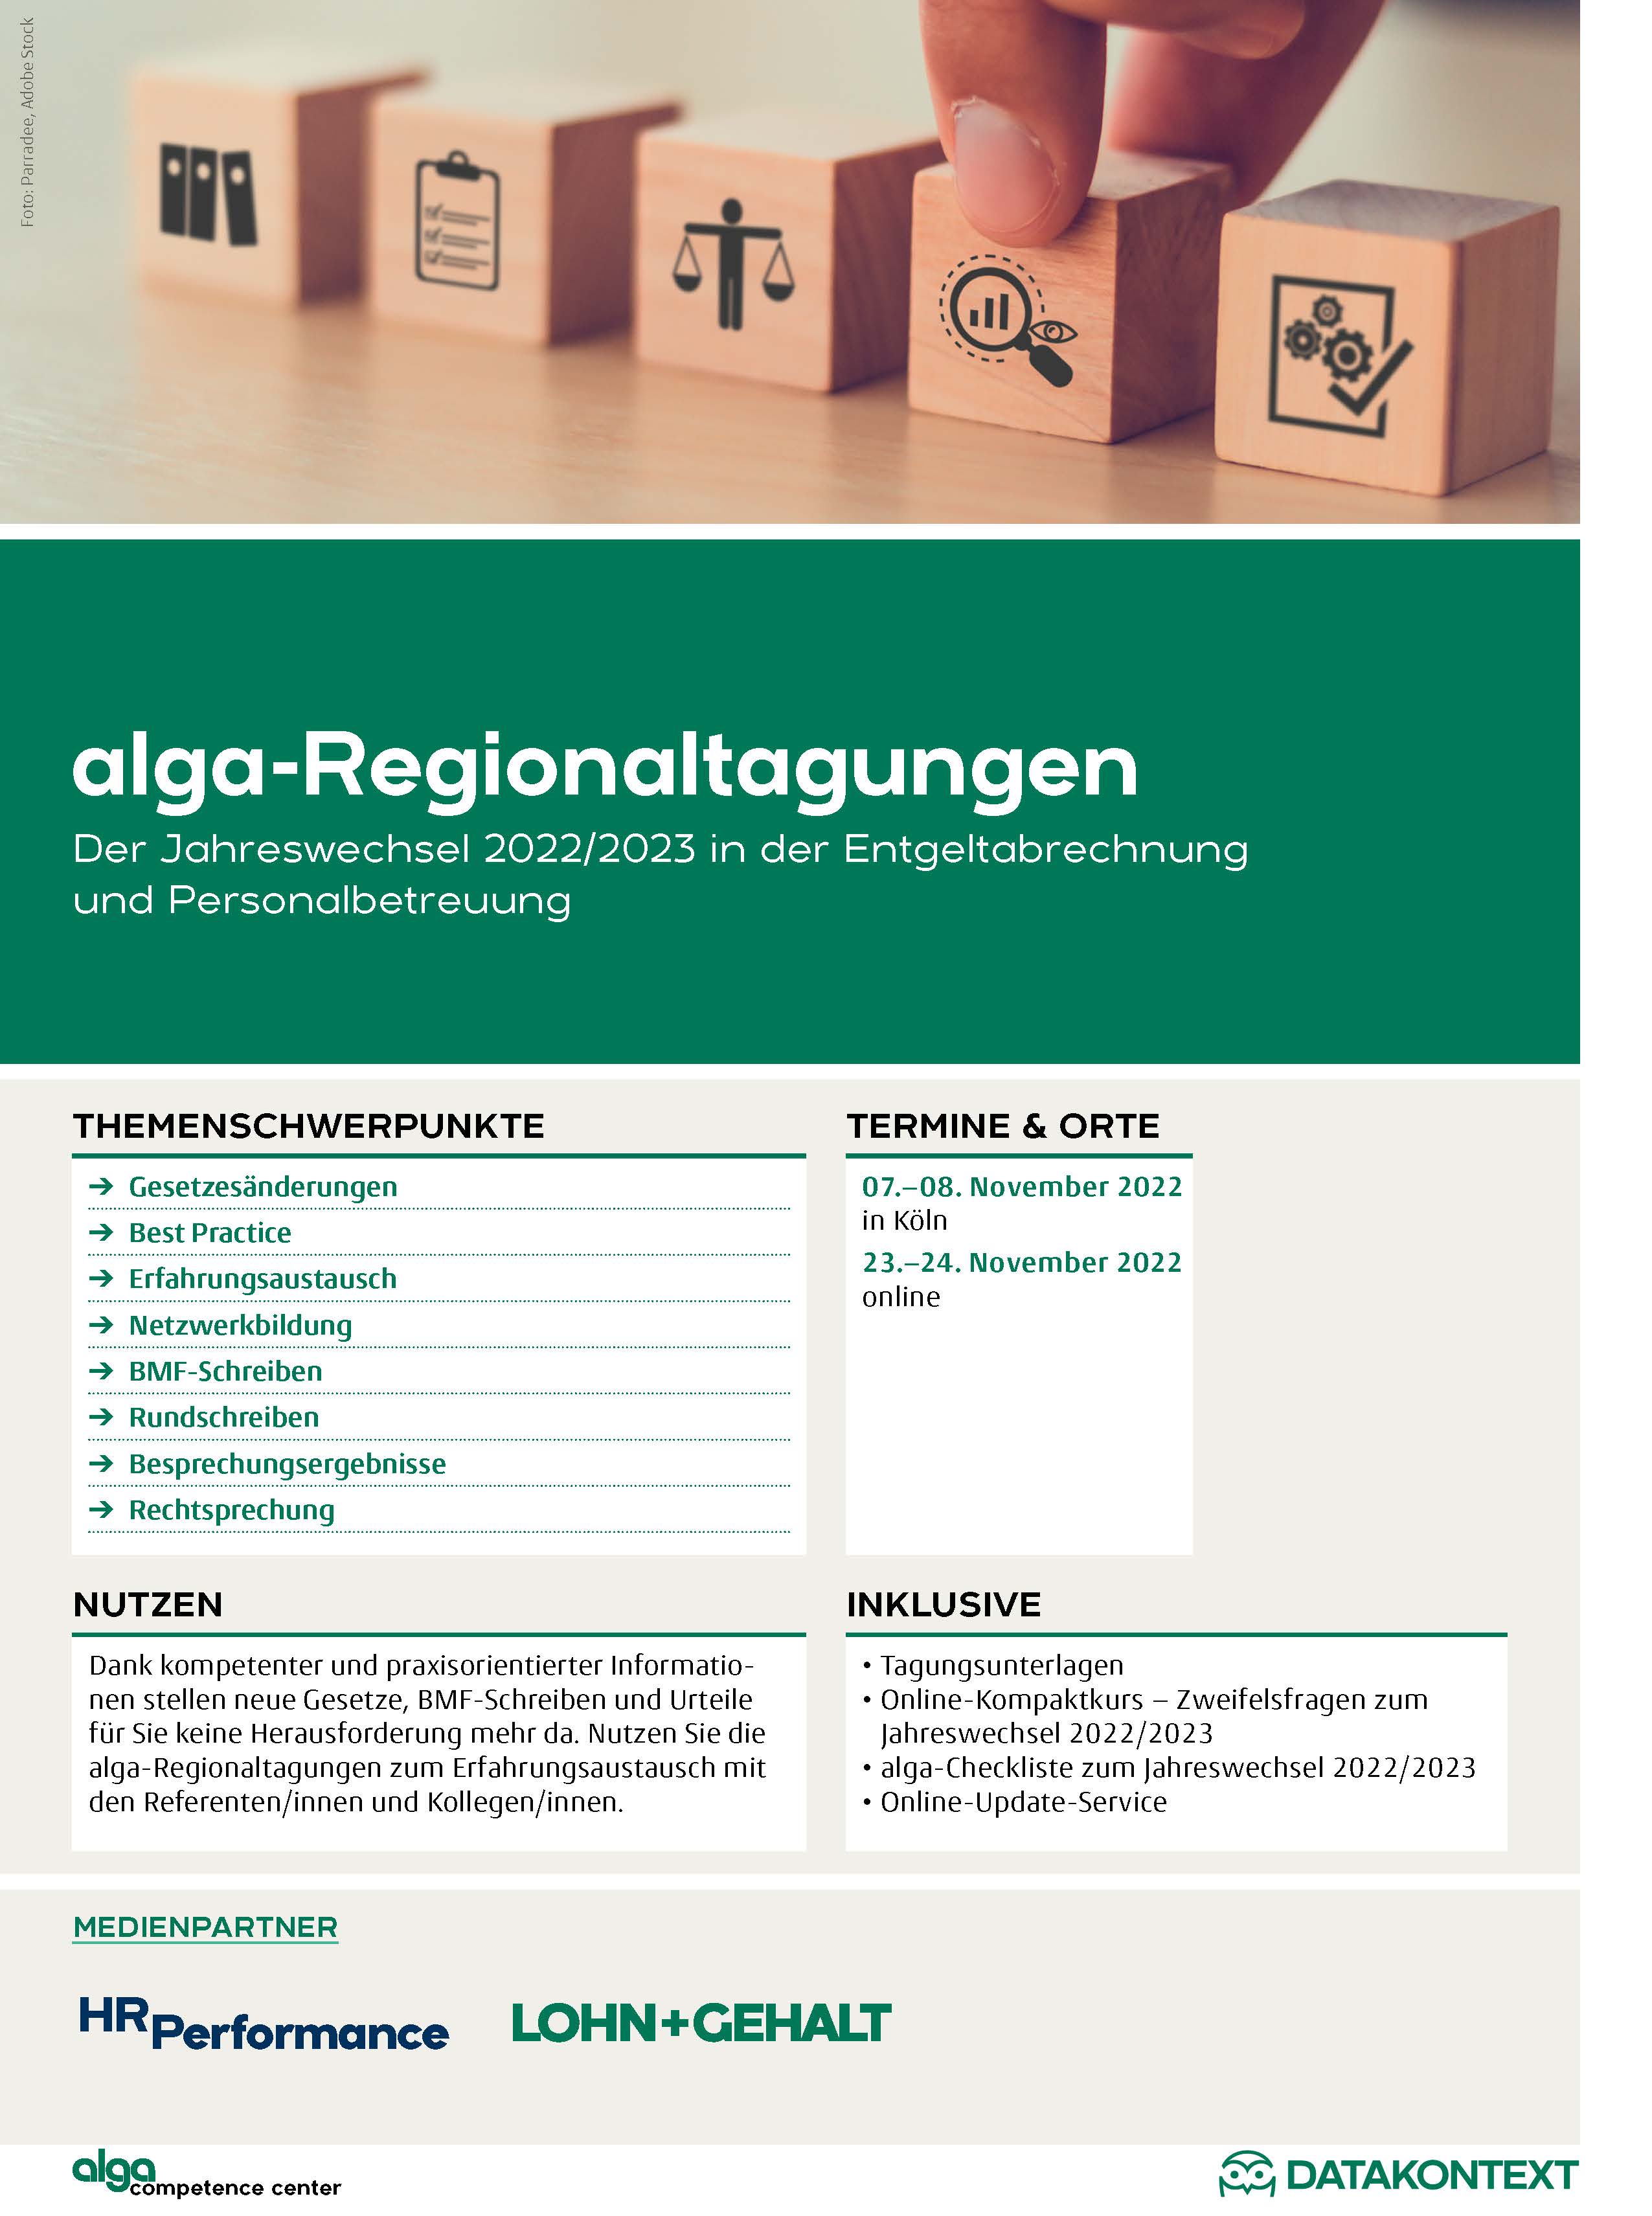 alga-Regionaltagungen - Der Jahreswechsel 2022/2023 in der Entgeltabrechnung und Personalbetreuung